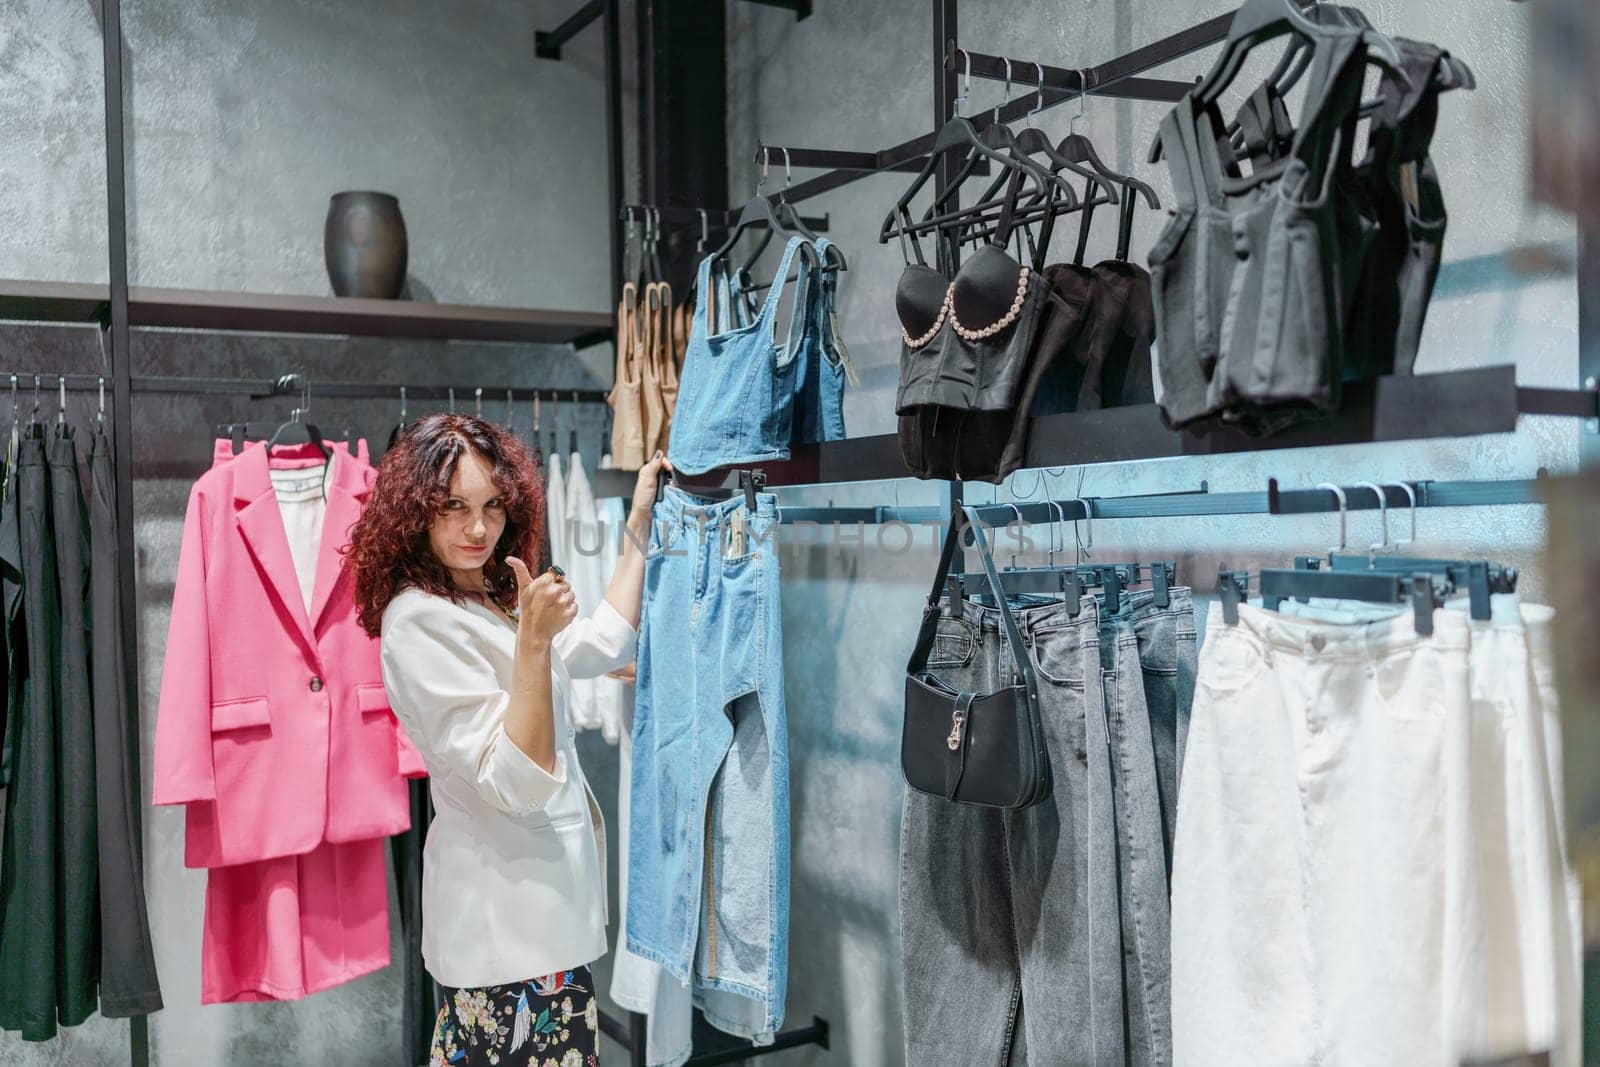 Shopping woman, women's fashion clothes in a store, boutique. Woman choosing clothes in a store by Matiunina